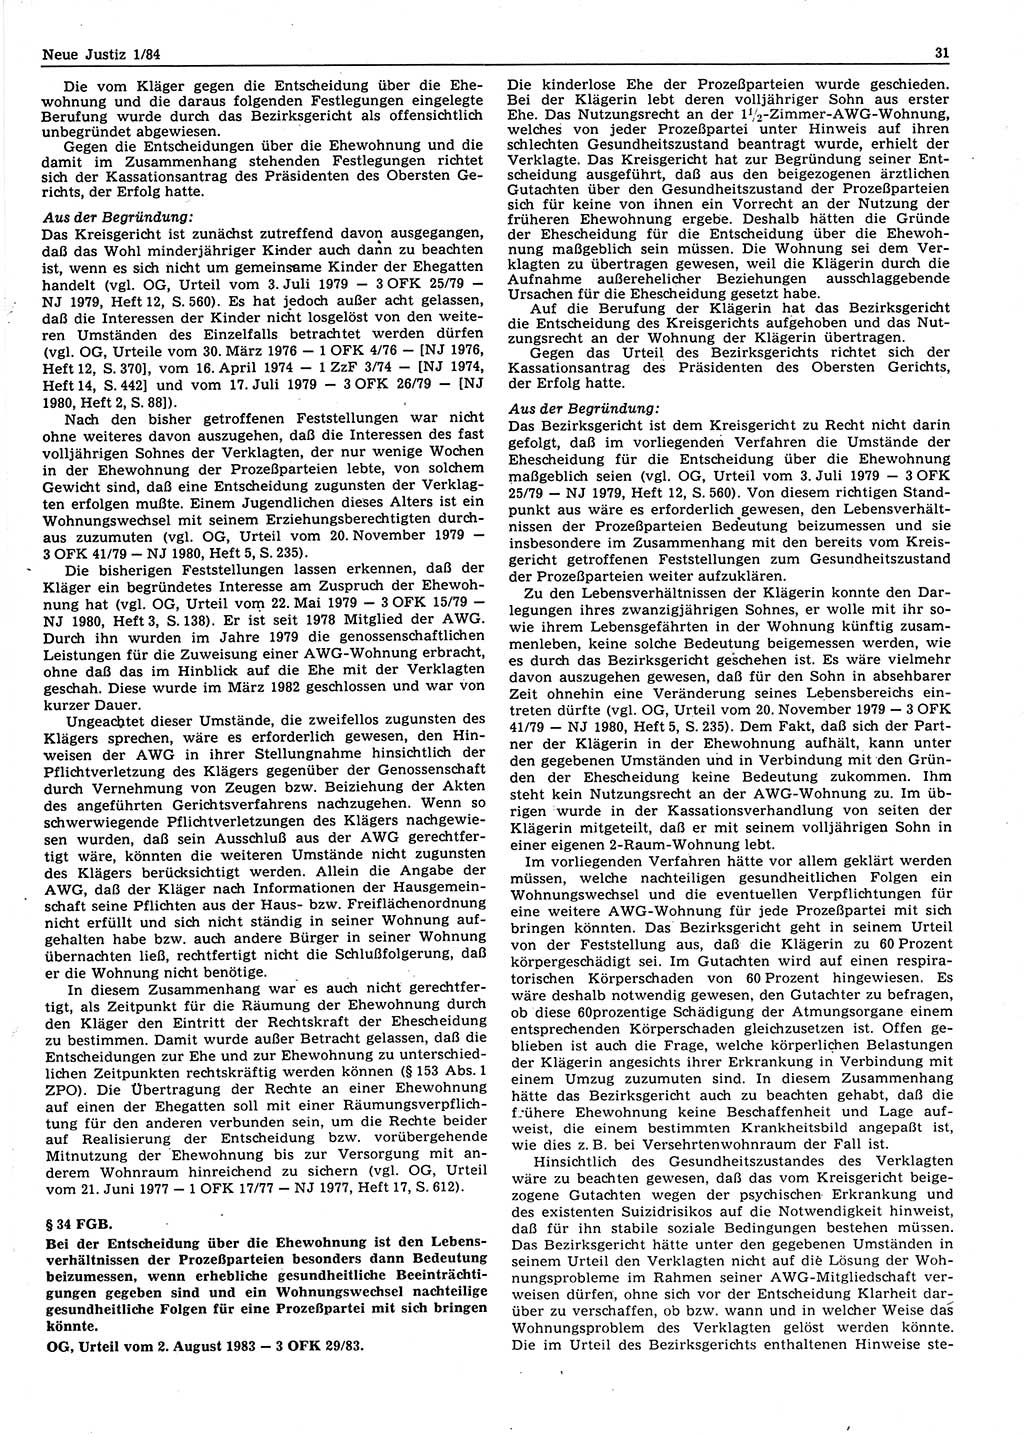 Neue Justiz (NJ), Zeitschrift für sozialistisches Recht und Gesetzlichkeit [Deutsche Demokratische Republik (DDR)], 38. Jahrgang 1984, Seite 31 (NJ DDR 1984, S. 31)